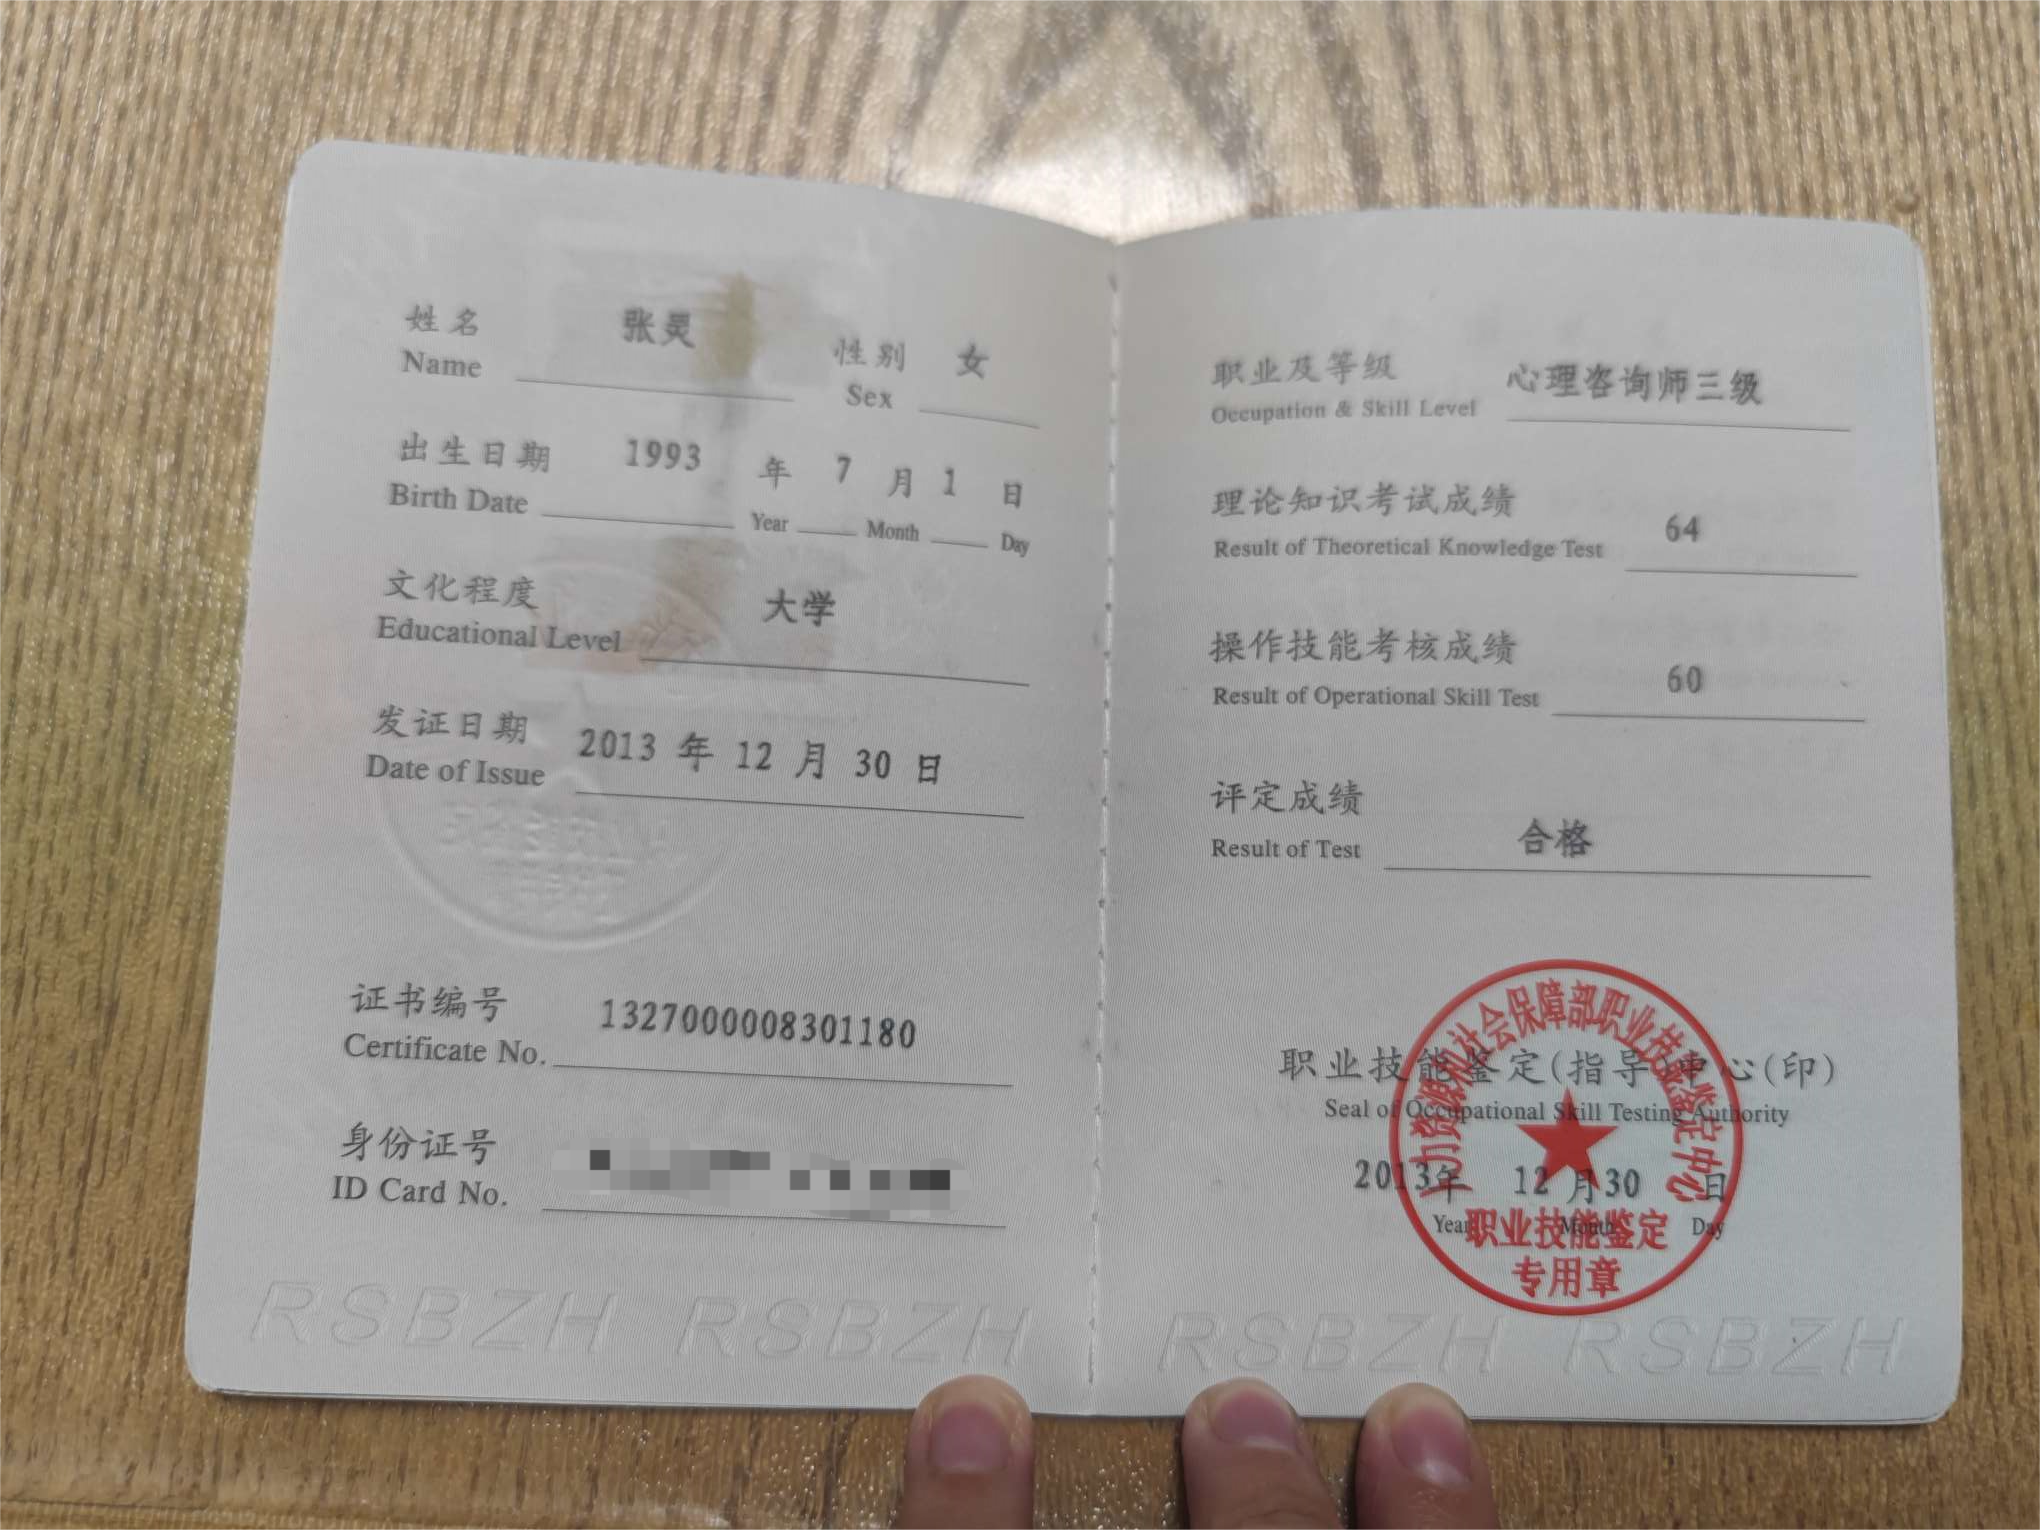 咨询师张灵的职业证书